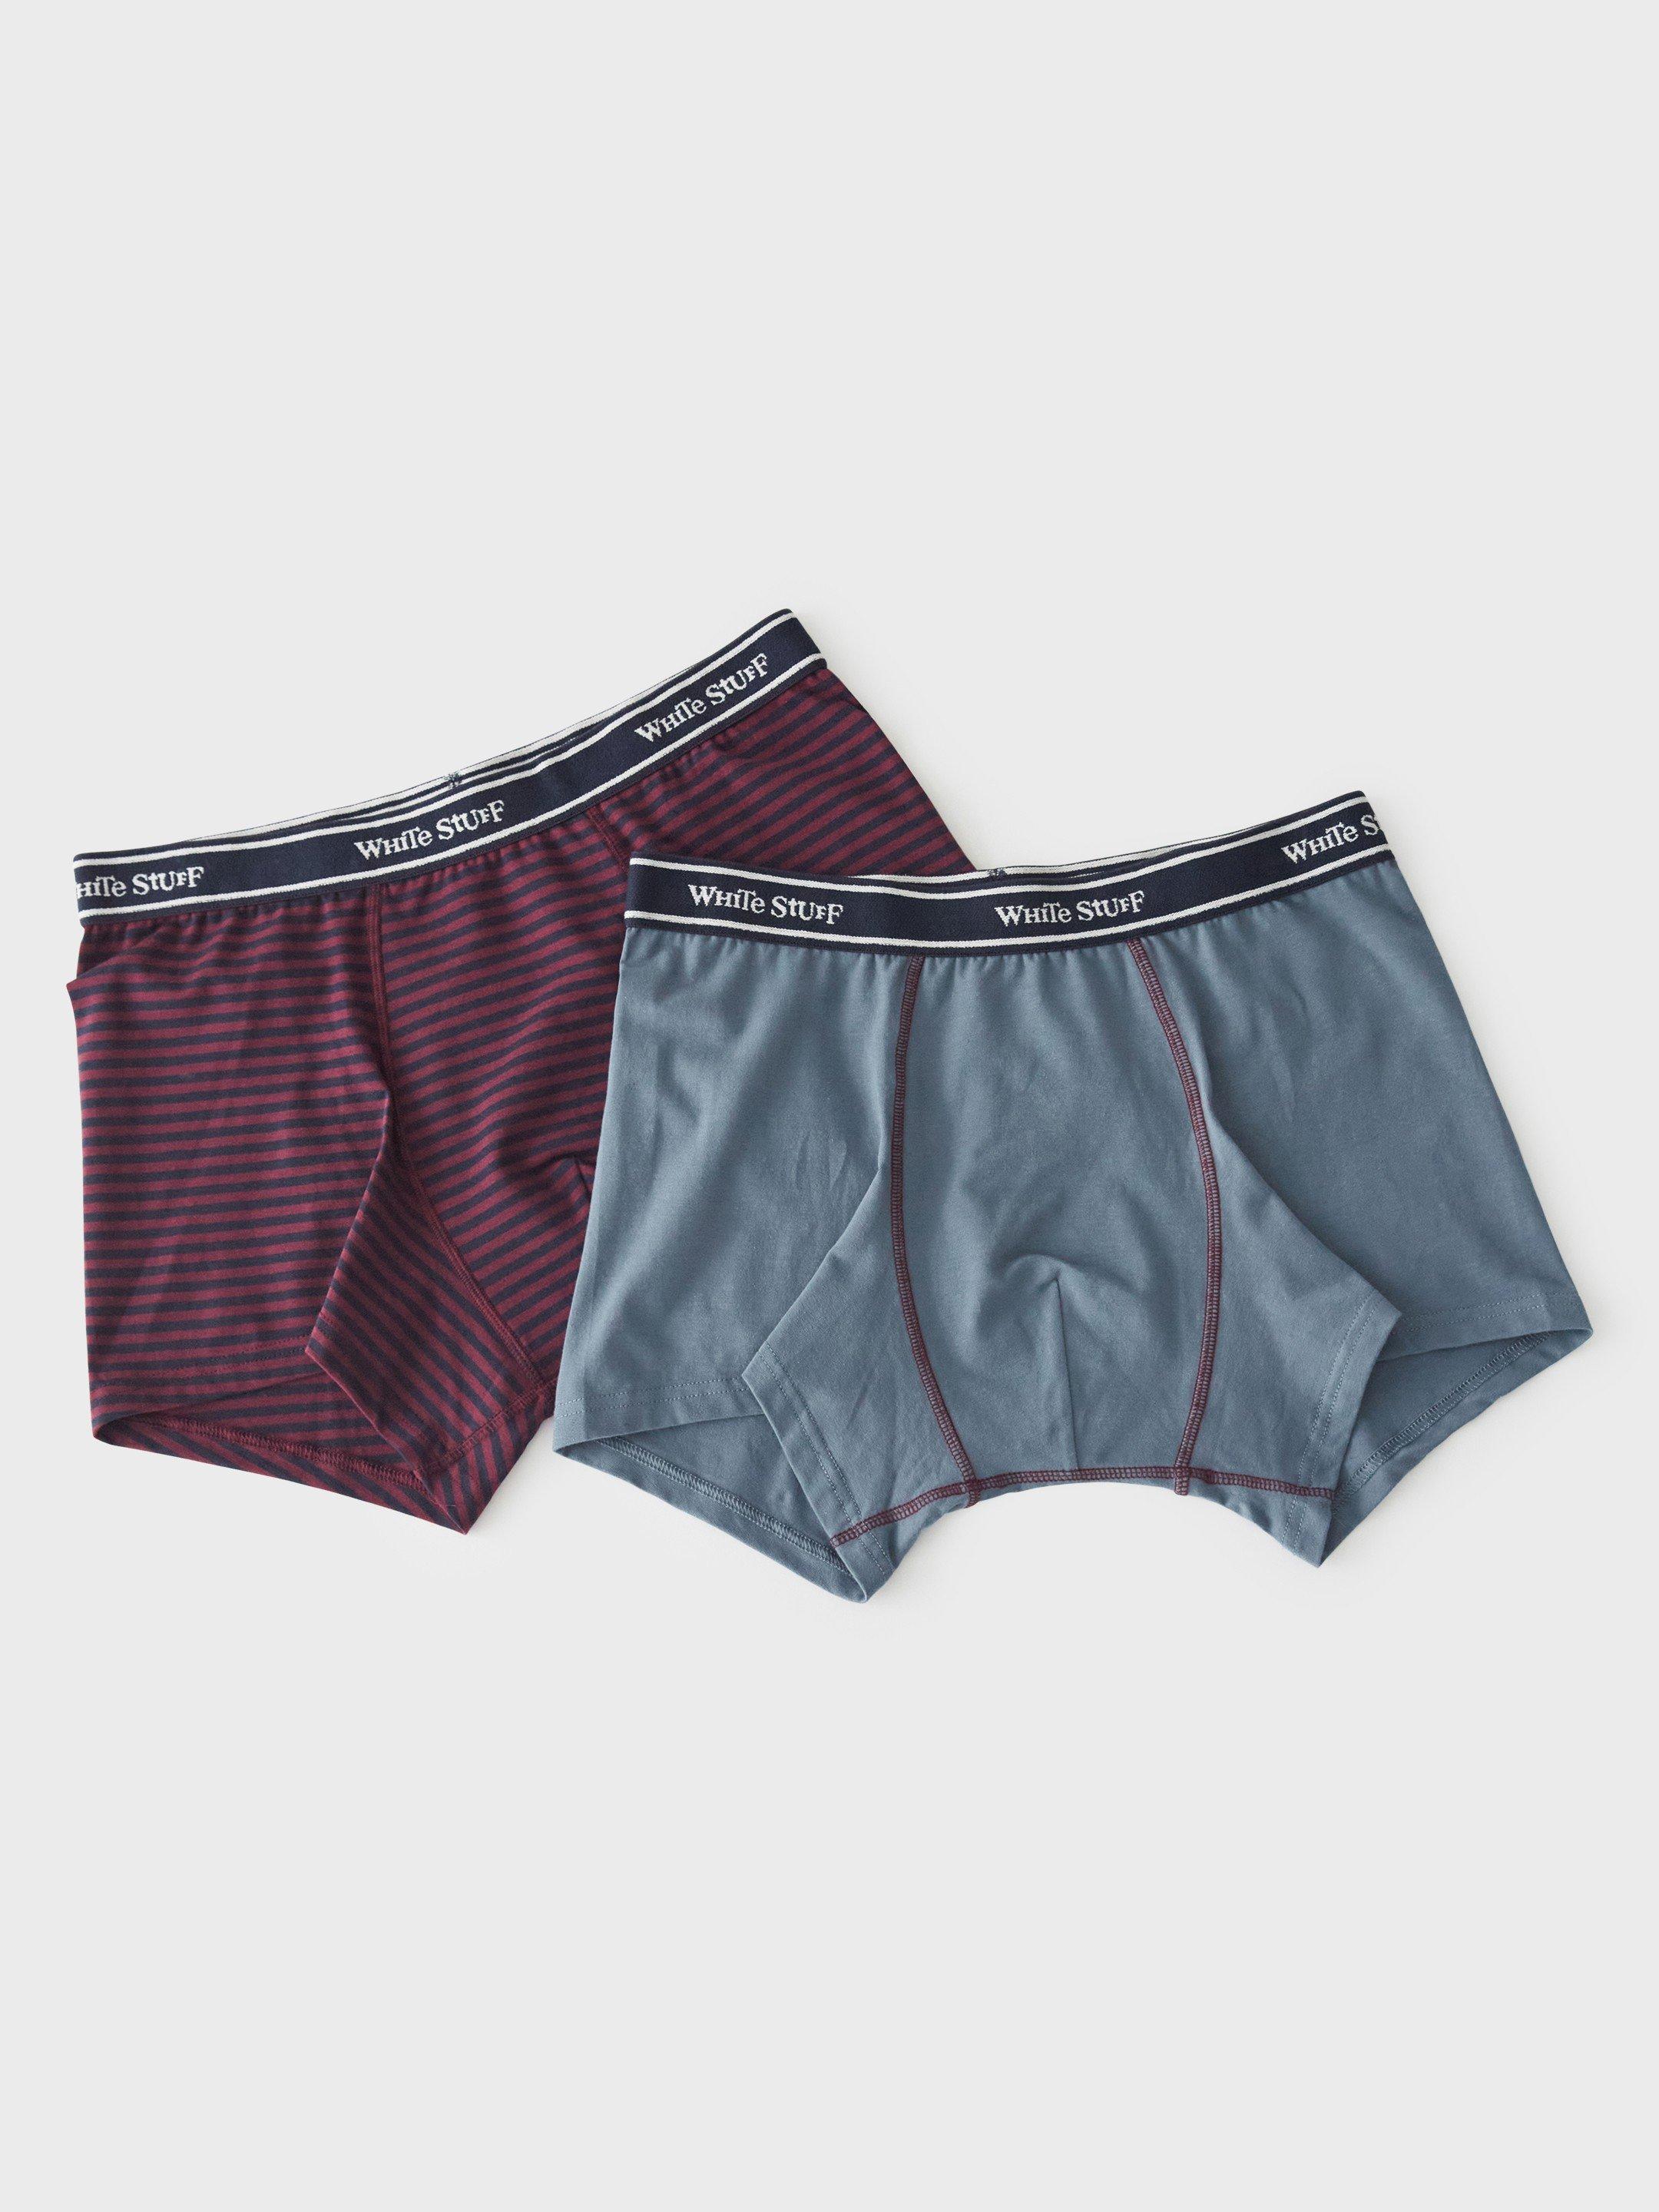 Shop Men's Underwear